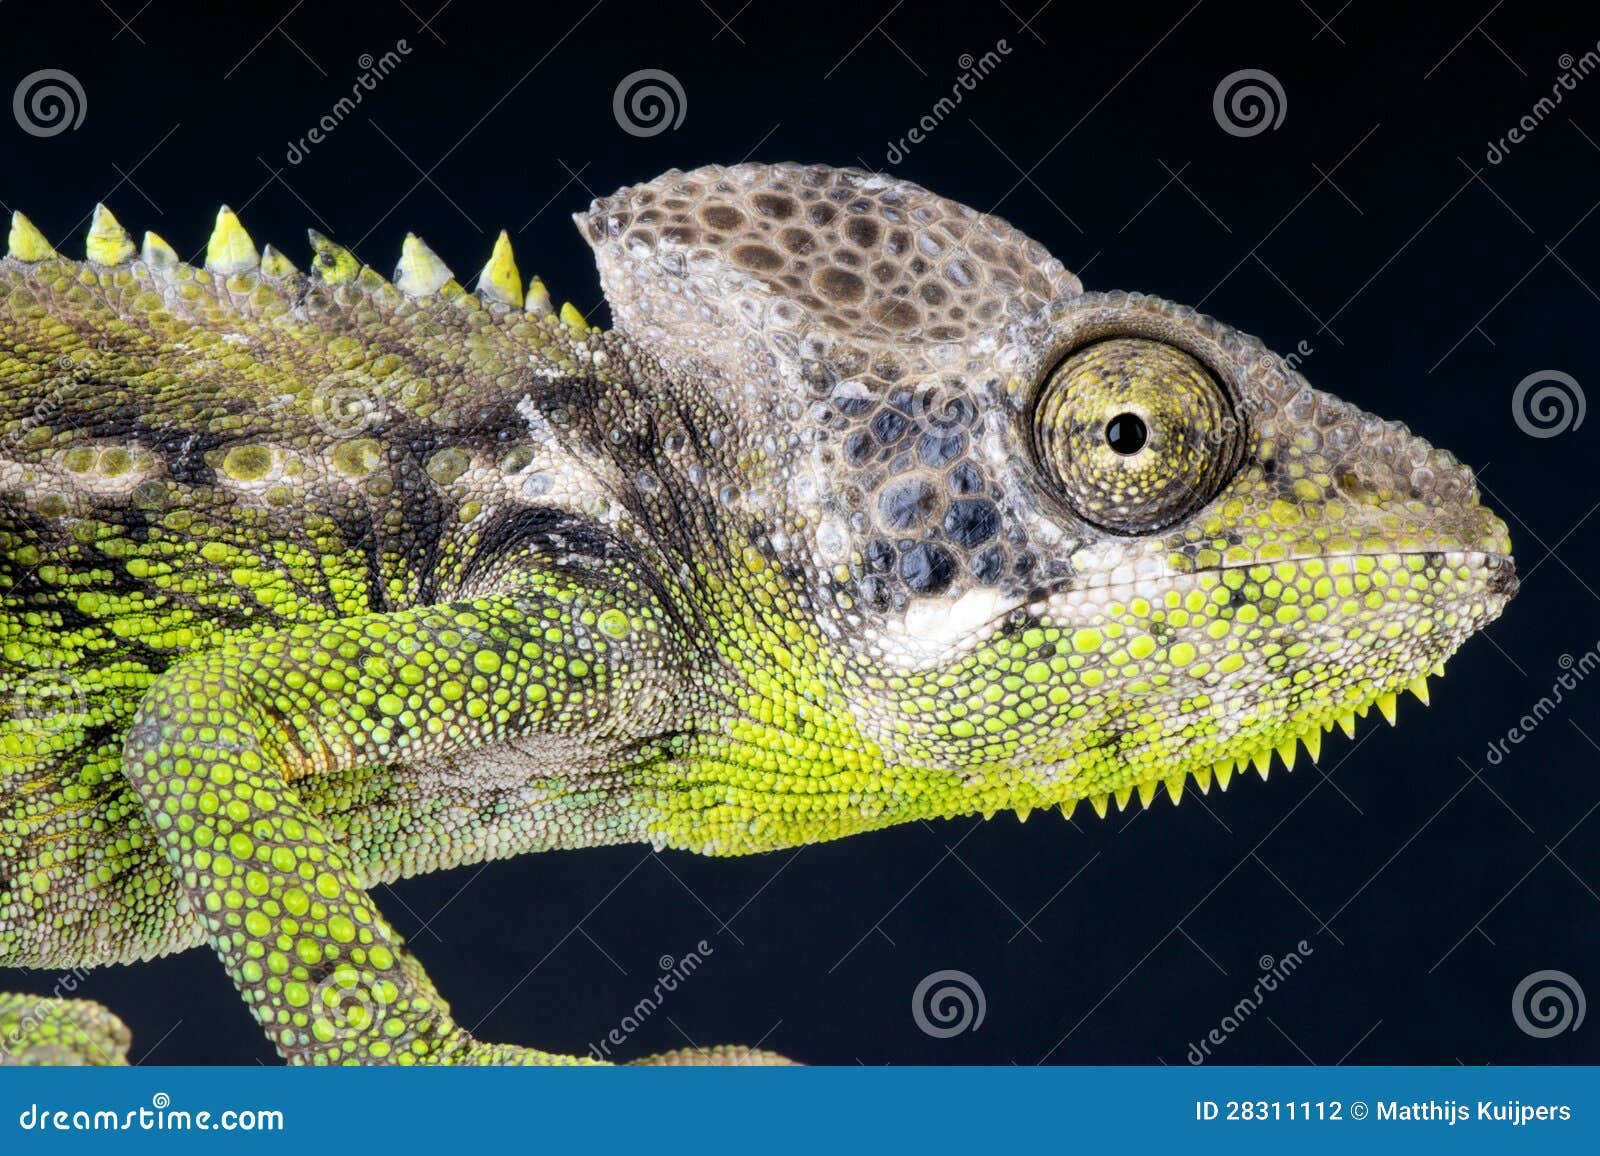 warty chameleon / furcifer verrucosus